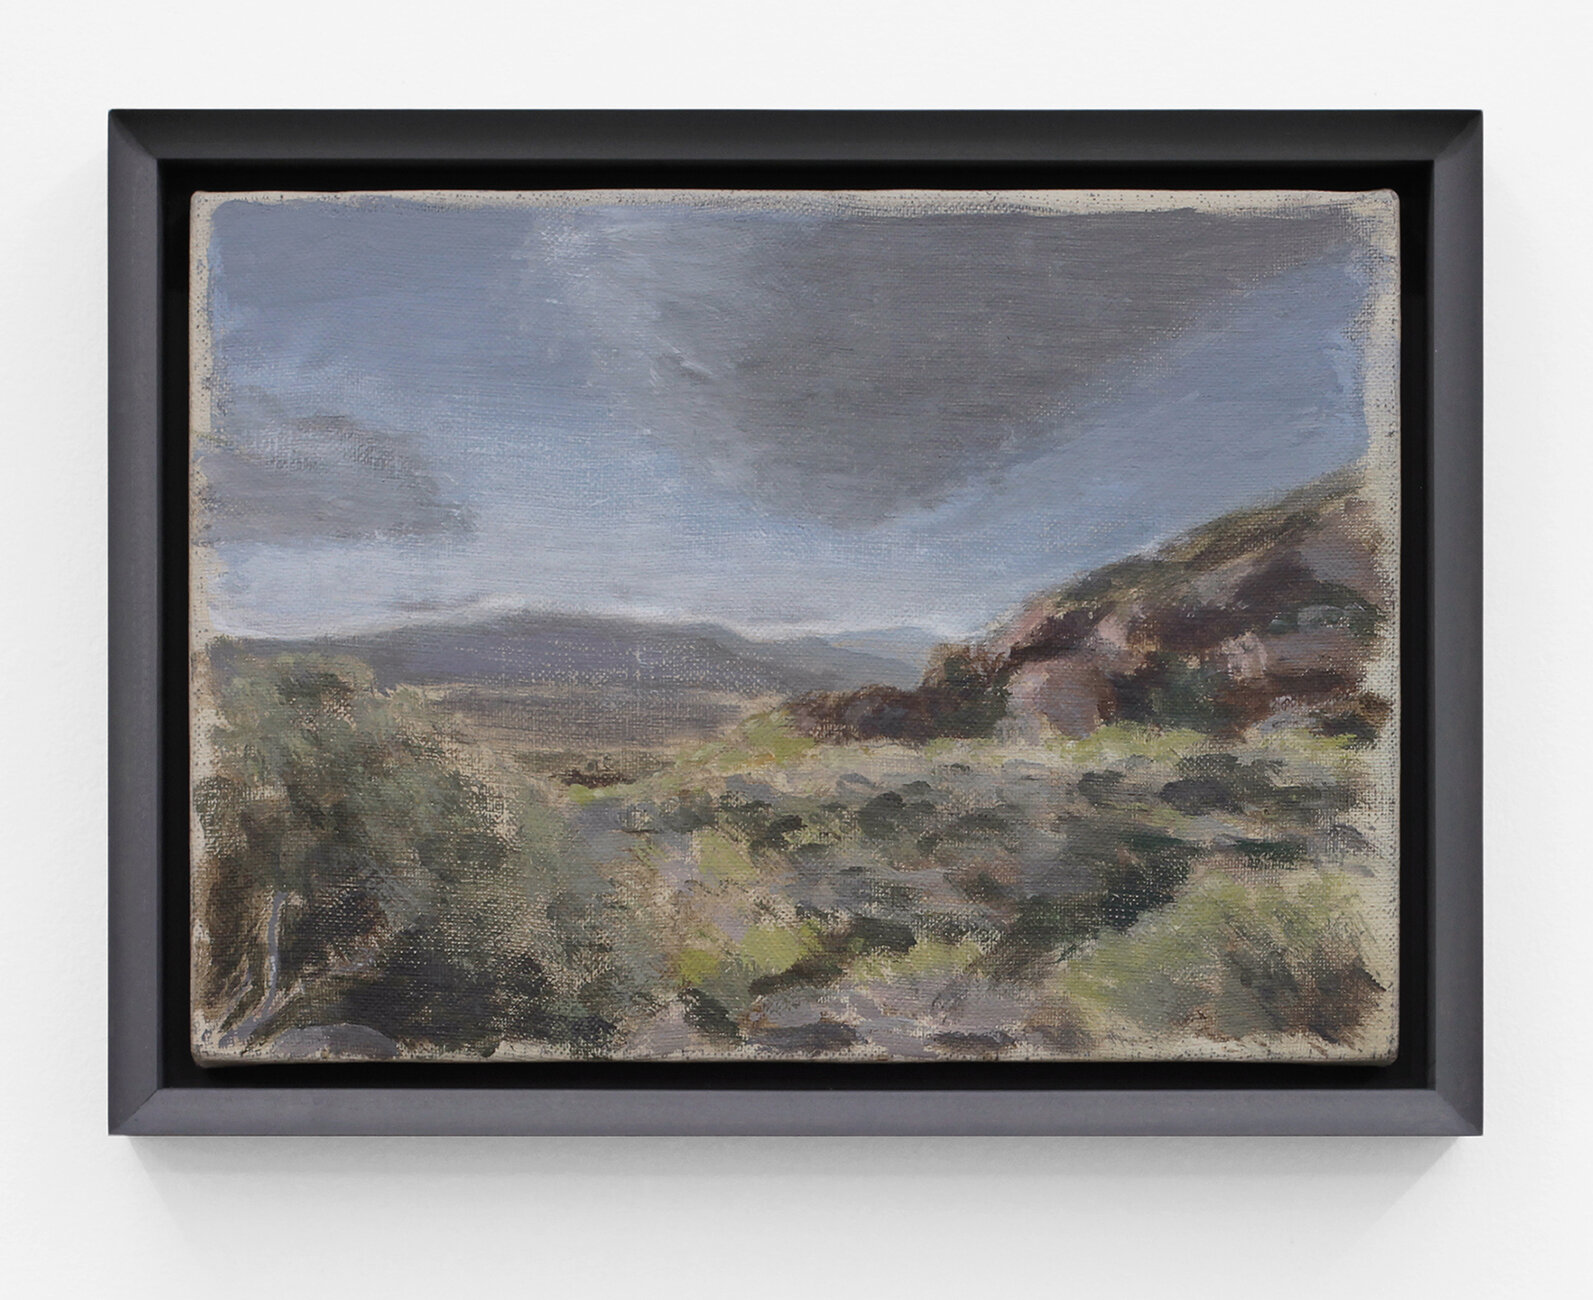  Sermon Notes - Landscape III  2018  Distemper on canvas  7 x 9.5 inches  (17.78 x 24.13 cm)     